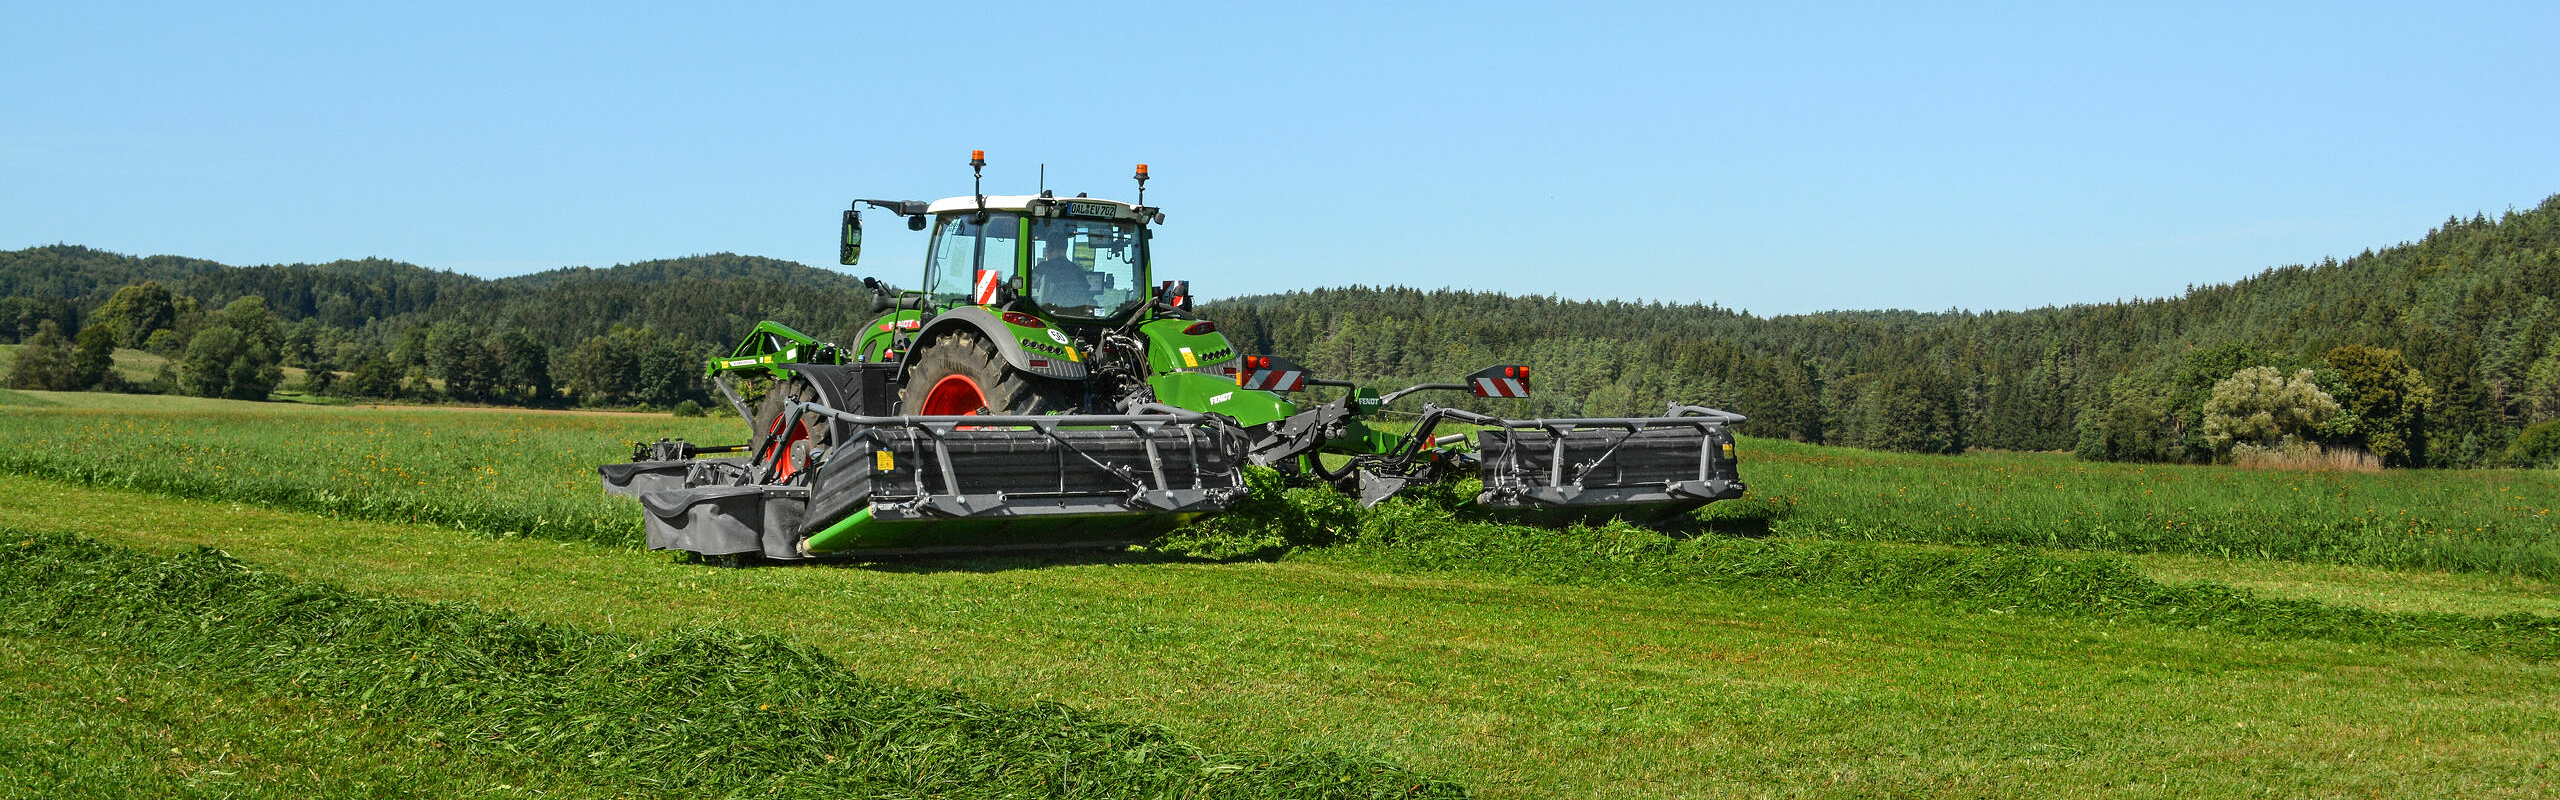 Tracteur Fendt dans un champ vert lors de la récolte avec le Fendt Slicer